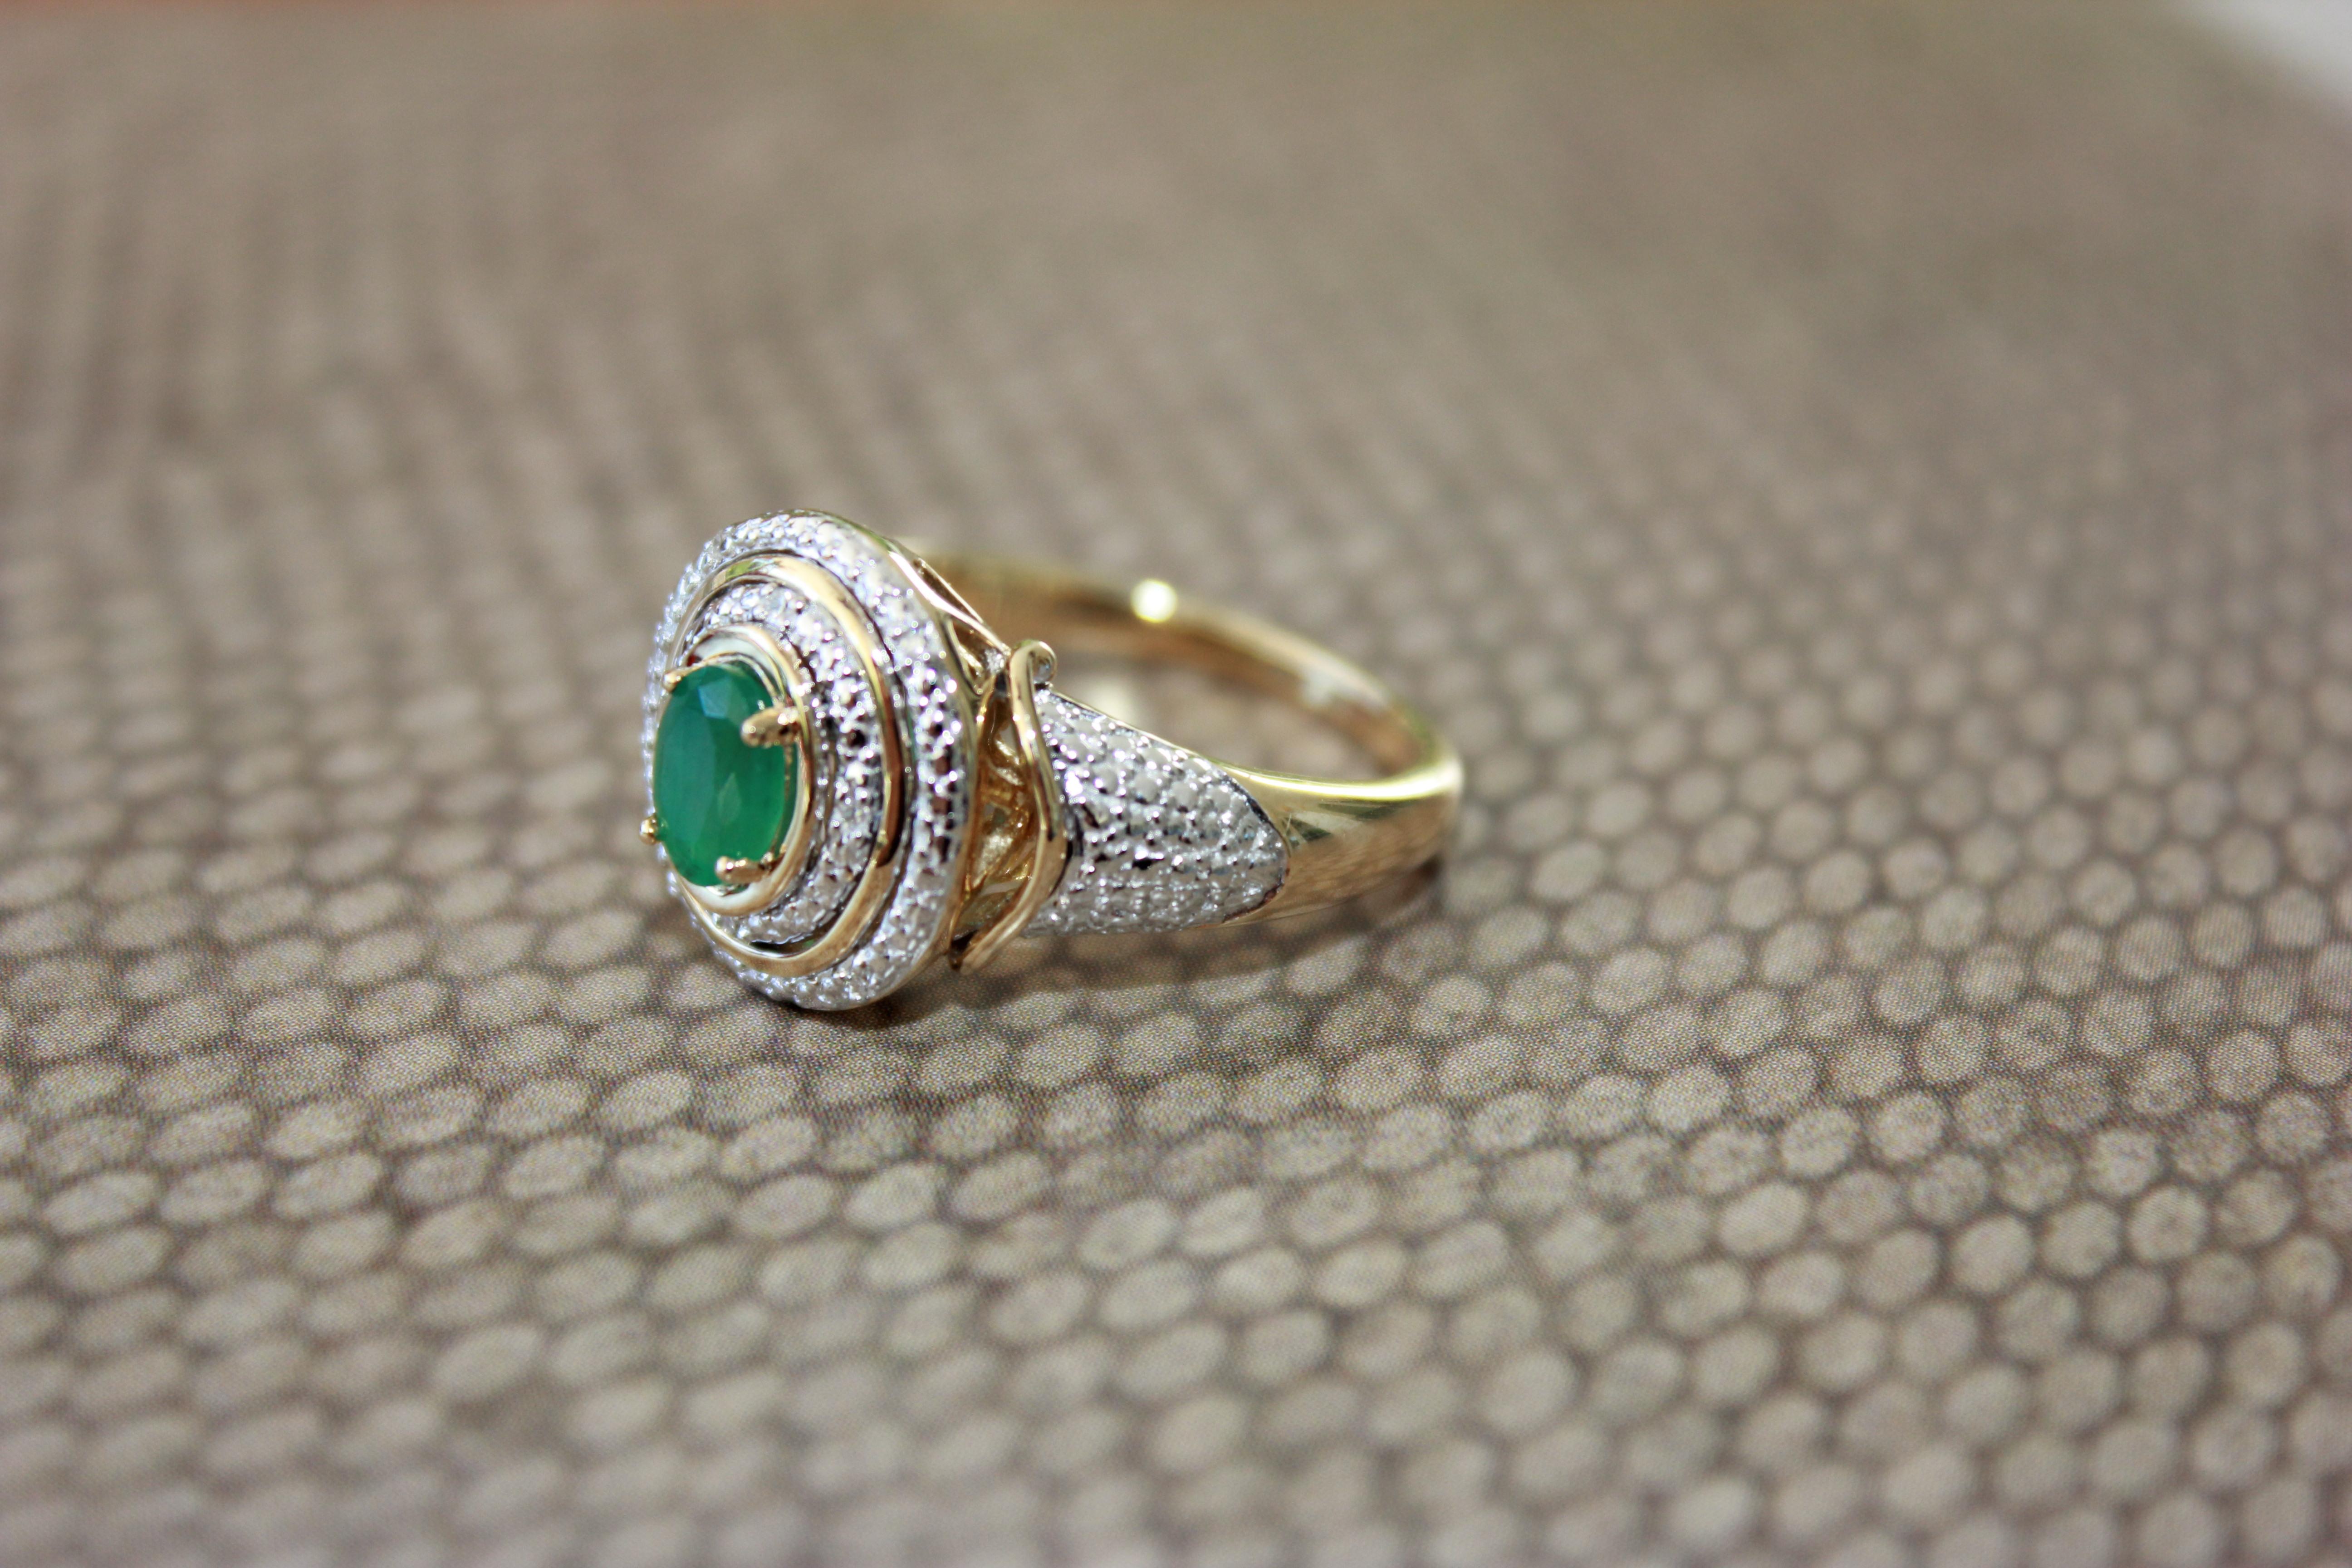 10K Gelbgold Smaragd Ring mit Diamanten, die perfekt als Cocktail-Ring oder ein alltägliches Stück ist. Dieser einzigartige Ring im Vintage-Stil ist ein echter Hingucker.

Gewicht des Diamanten: 0,03 Karat Gesamtgewicht
Smaragd Größe: 6 x 4
Gewicht